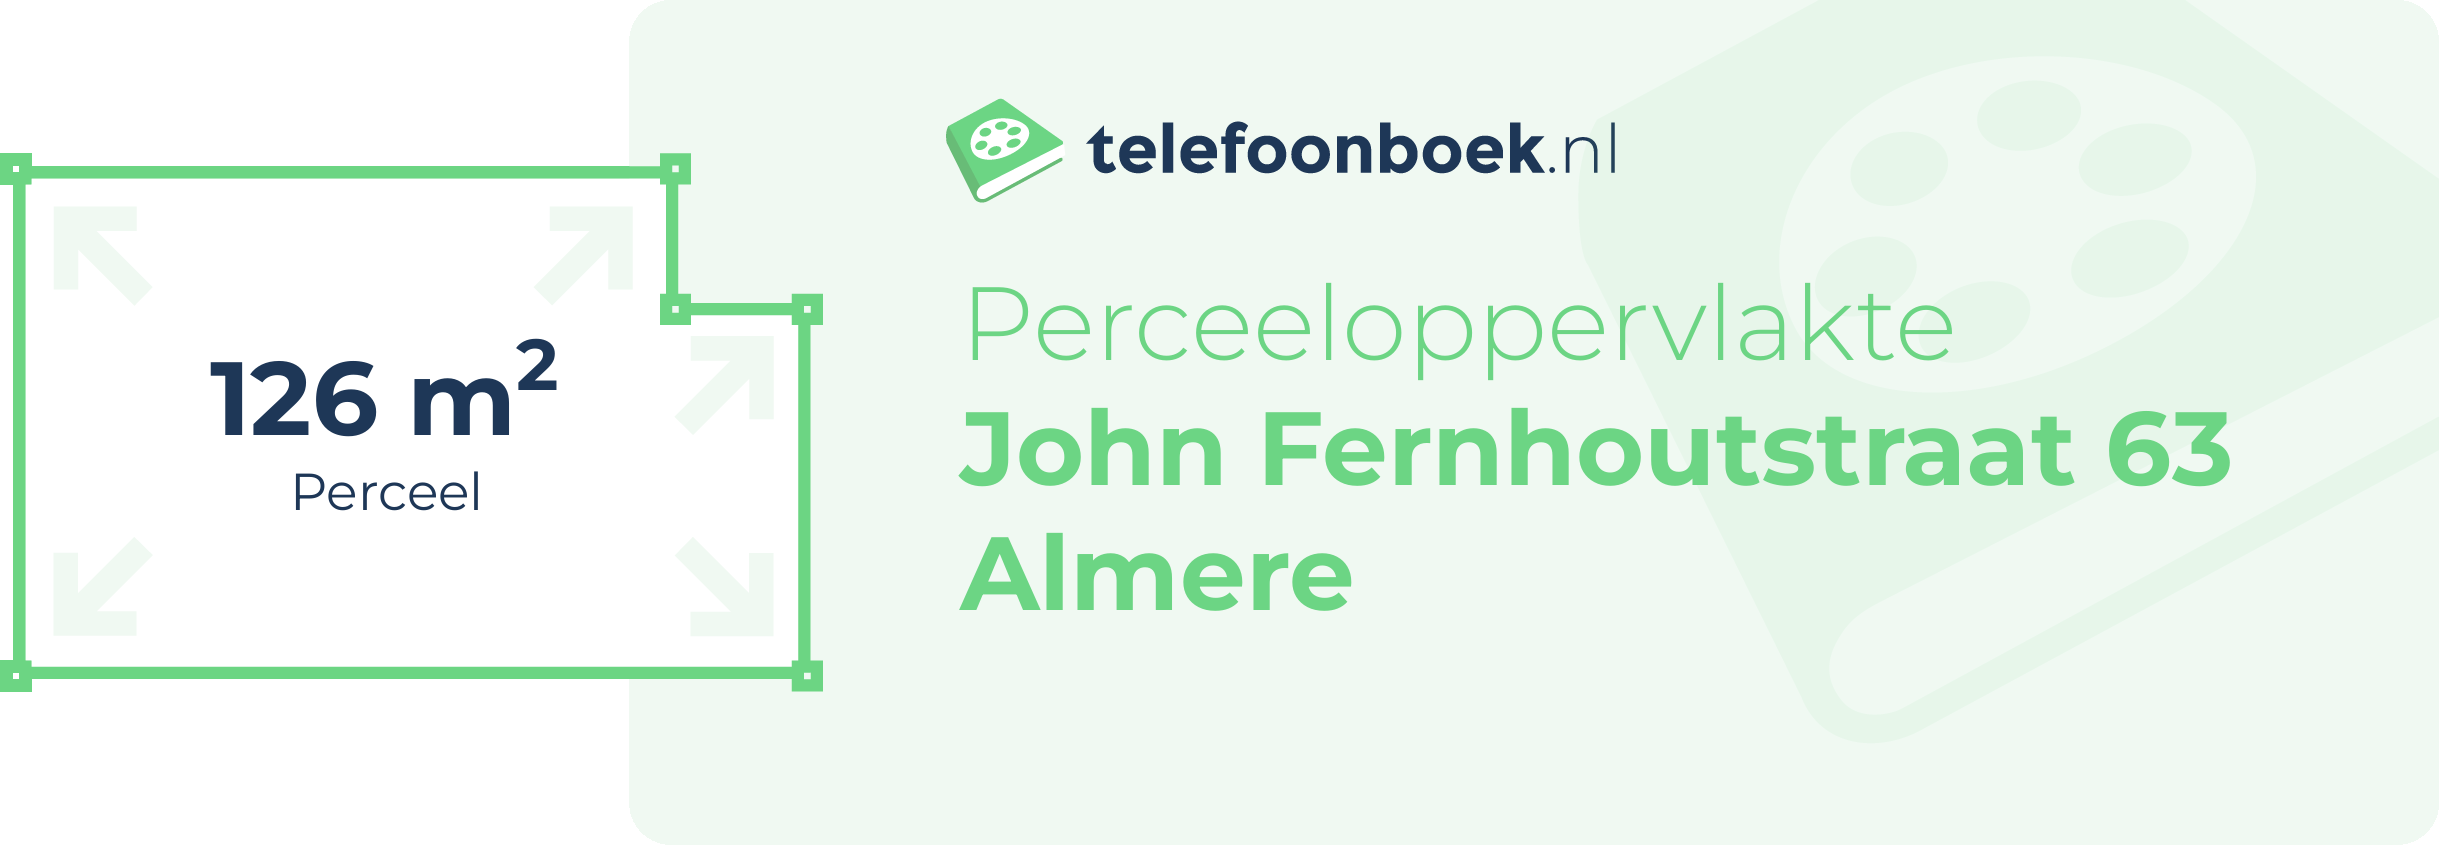 Perceeloppervlakte John Fernhoutstraat 63 Almere